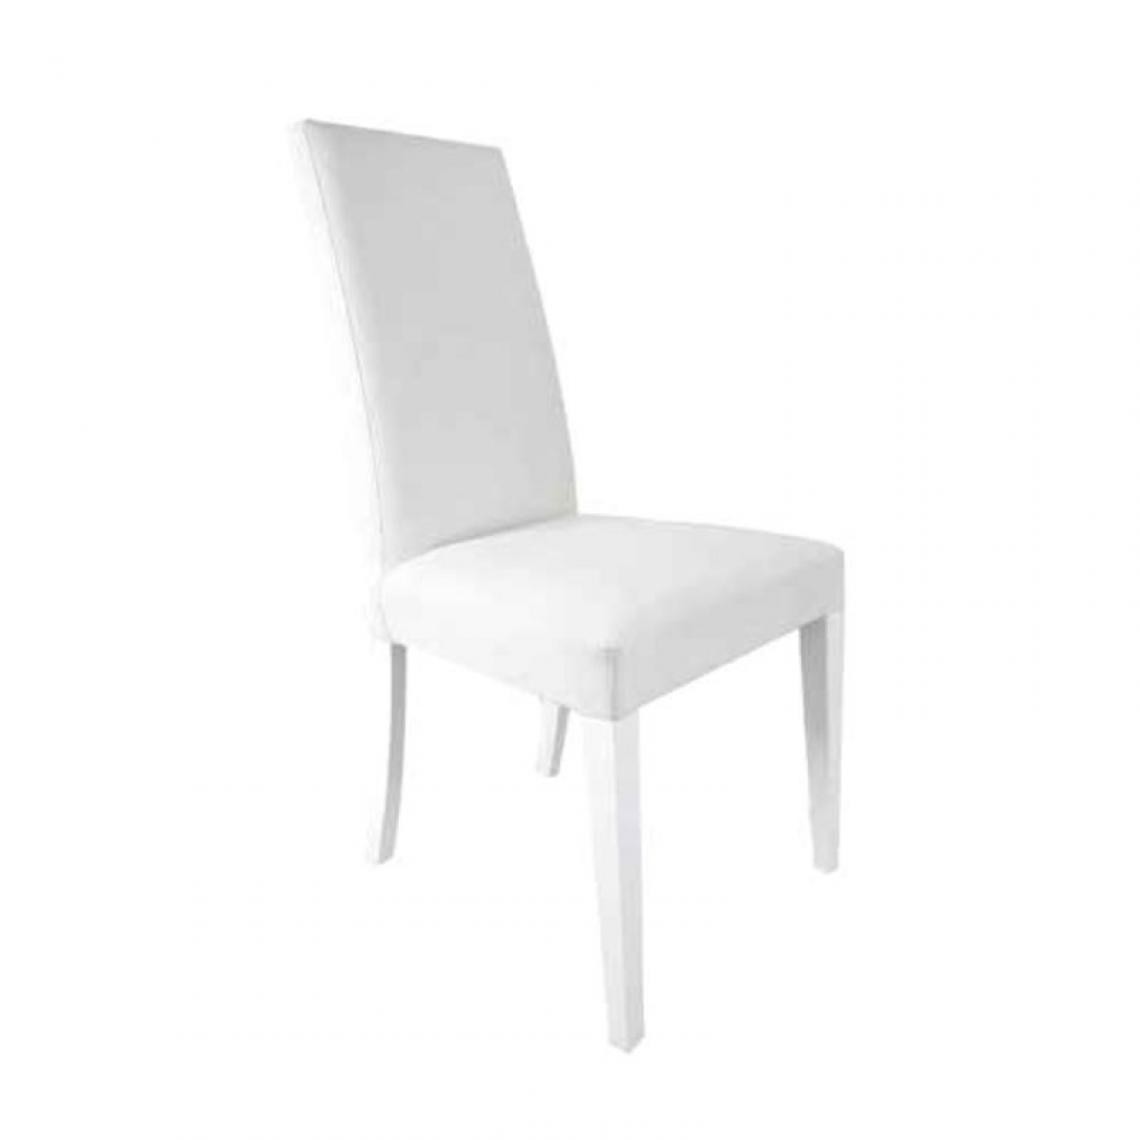 Webmarketpoint - Chaise en bois assortie recouverte de similicuir blanc 47x47xh.101 cm - Chaises